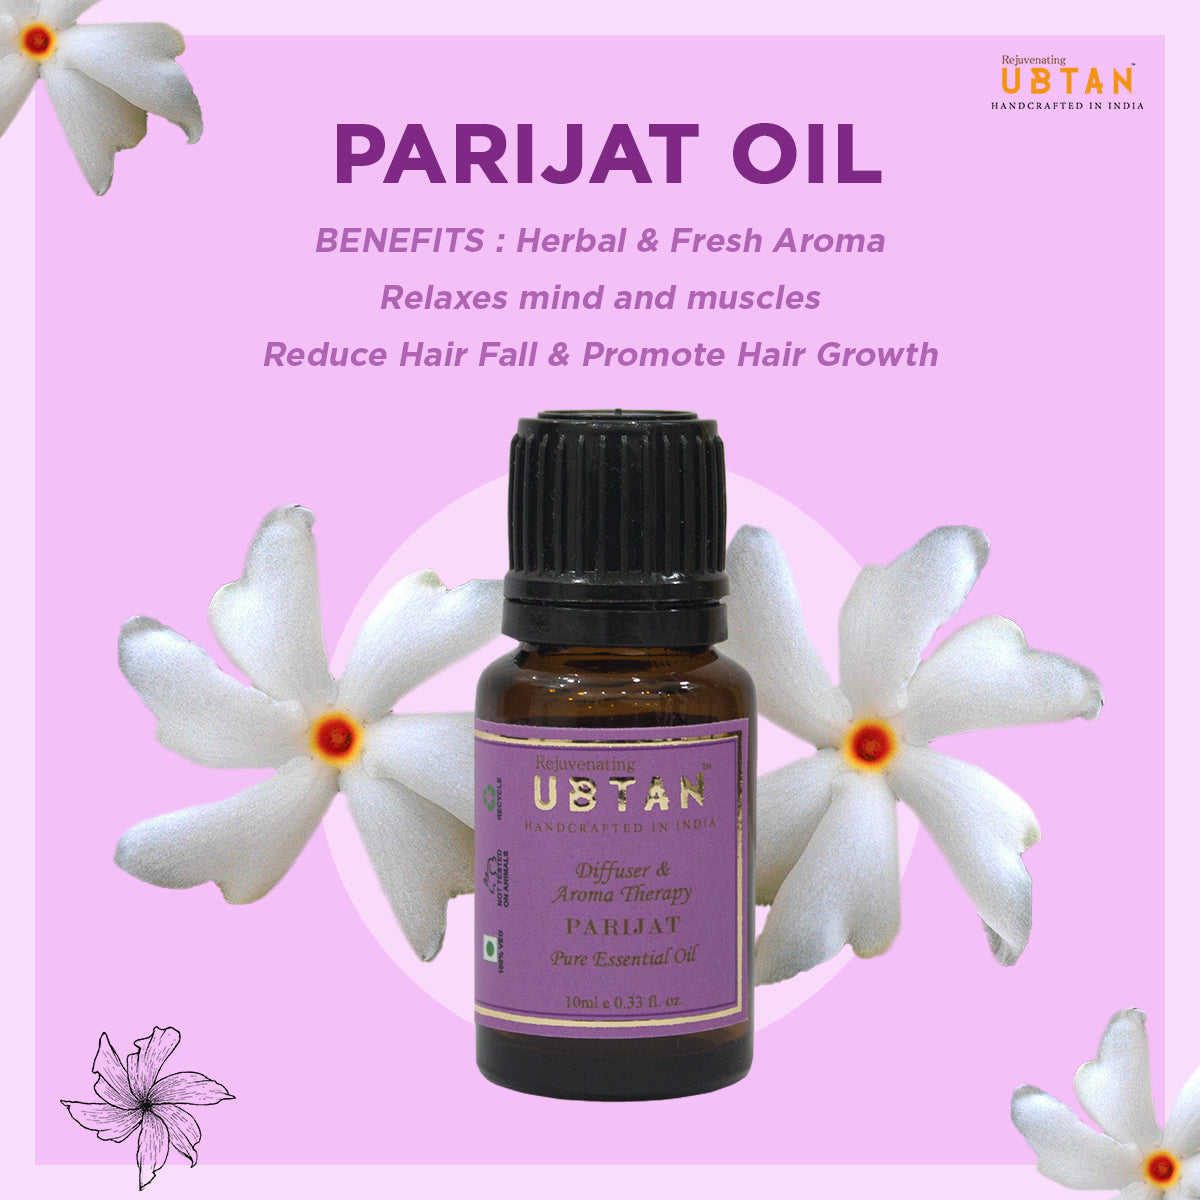 Parijat Essential Oil - Rejuvenating UBTAN